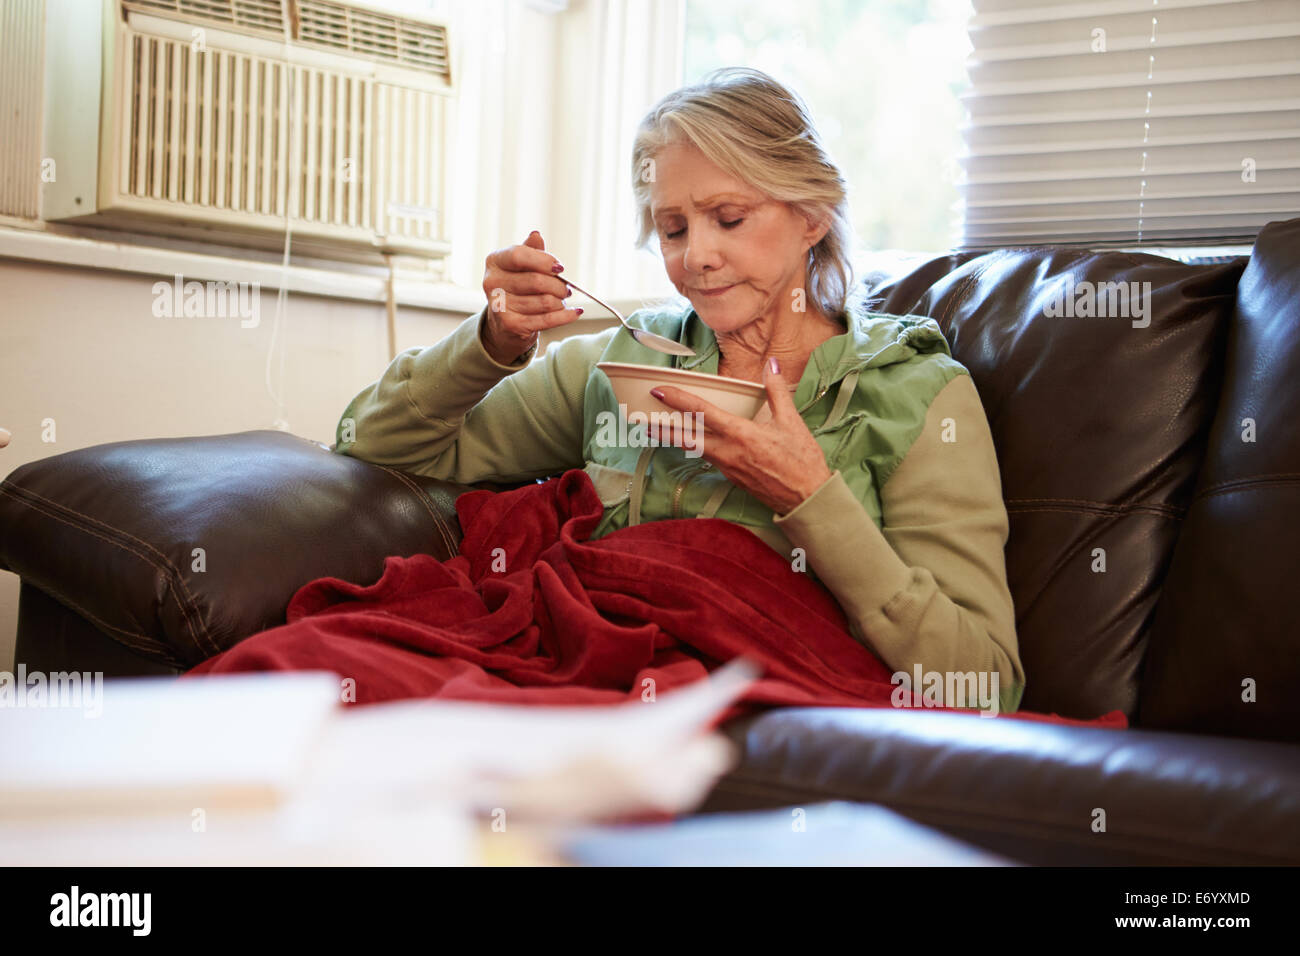 Senior Woman avec une mauvaise alimentation au chaud sous une couverture Banque D'Images